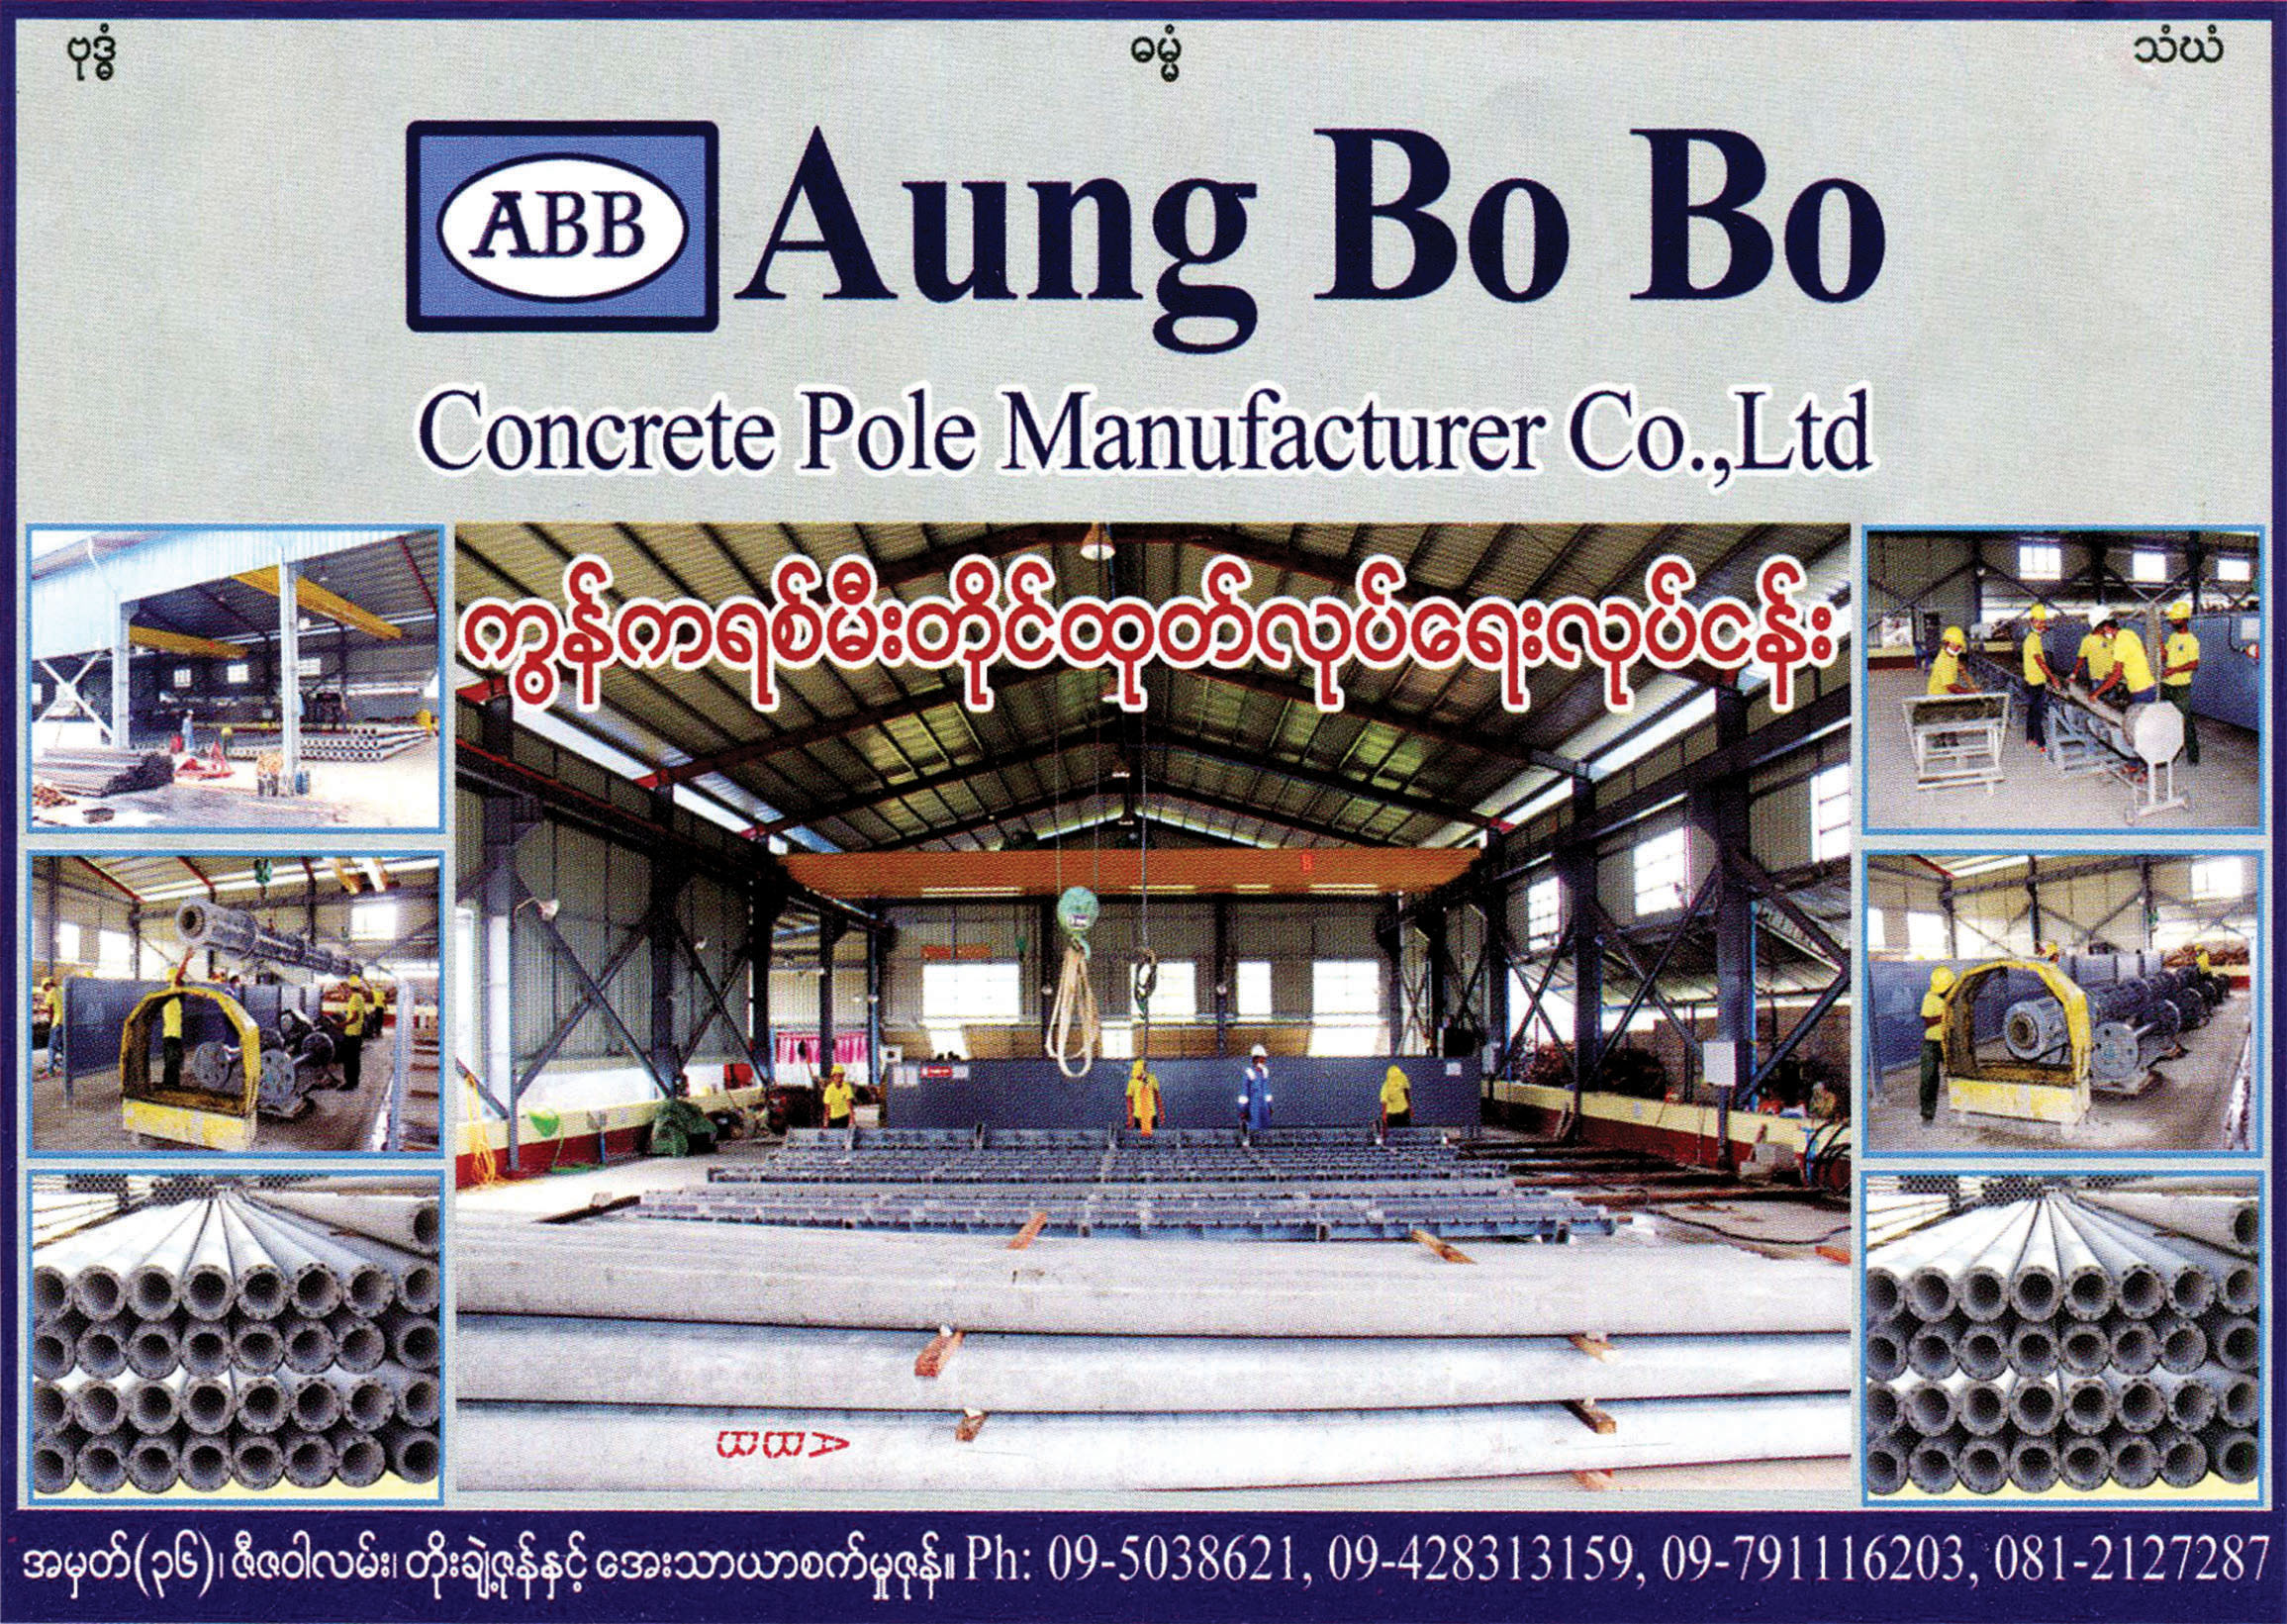 Aung Bo Bo Concrete Pole Manufacturer Co., Ltd.